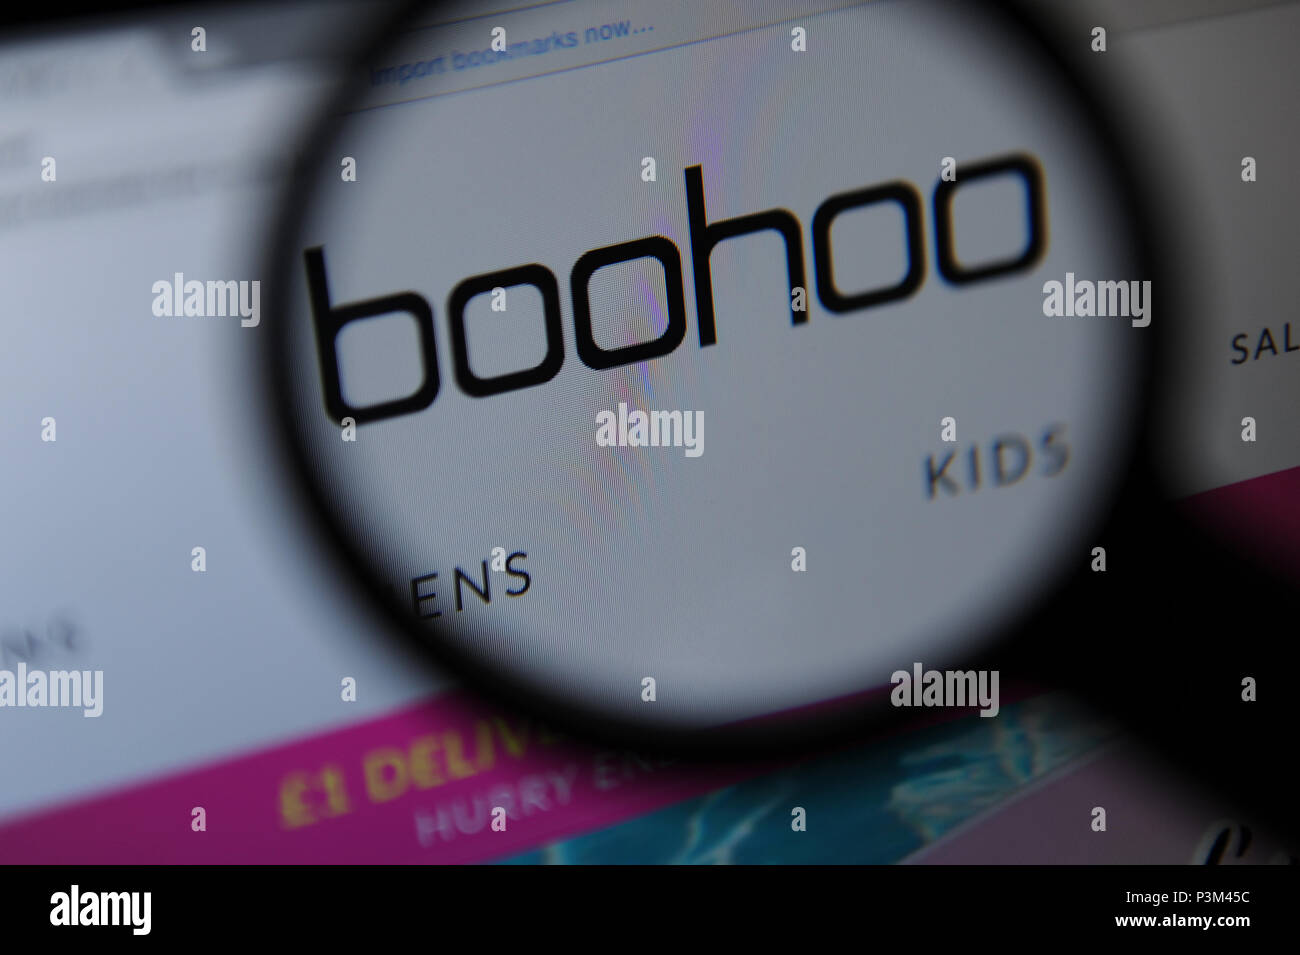 Il sito web Boohoo visto attraverso una lente di ingrandimento Foto Stock